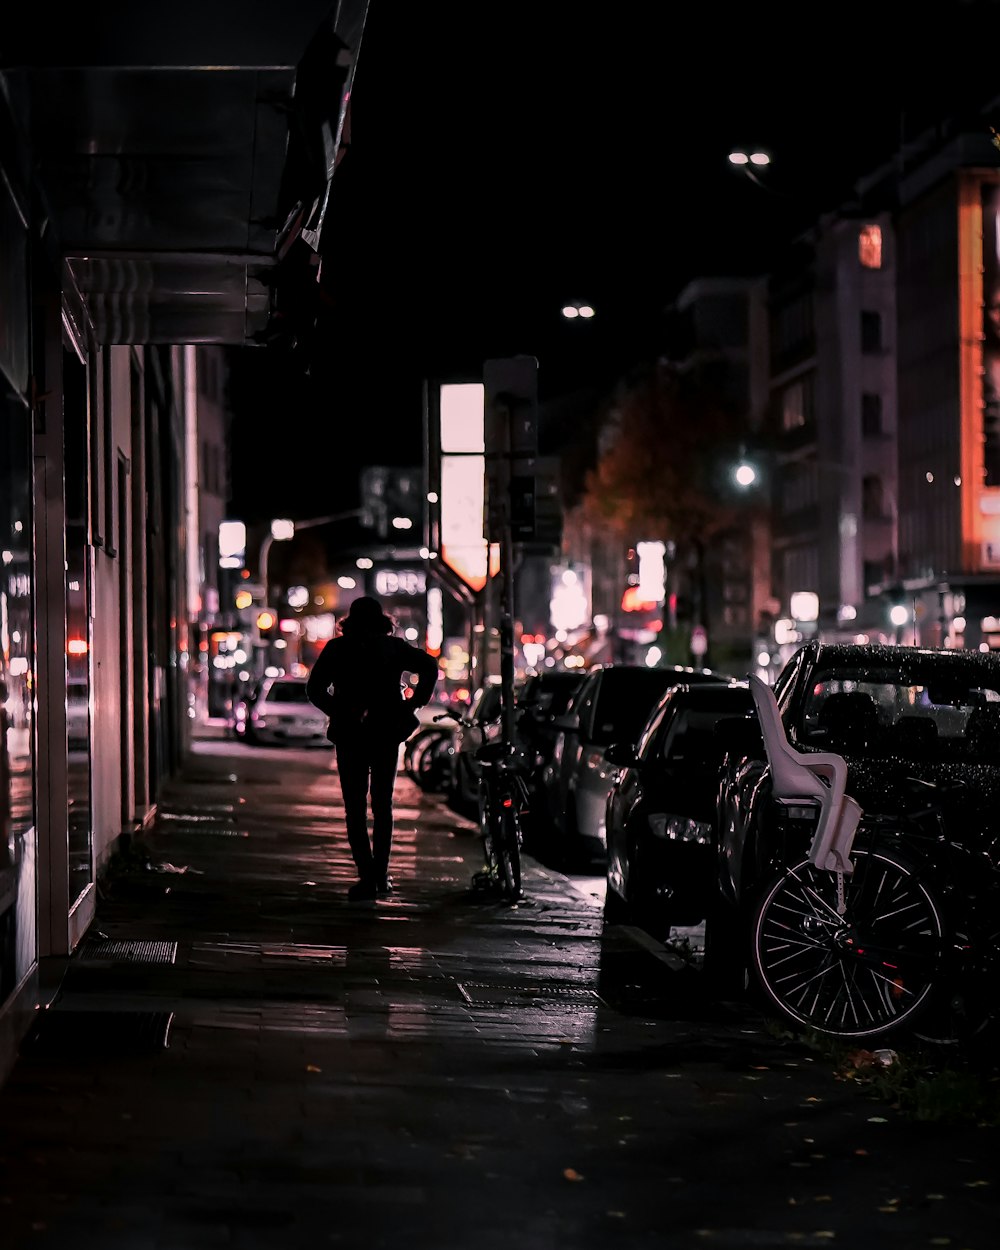 검은 재킷을 입은 남자가 밤에 보도를 걷고 있습니다.